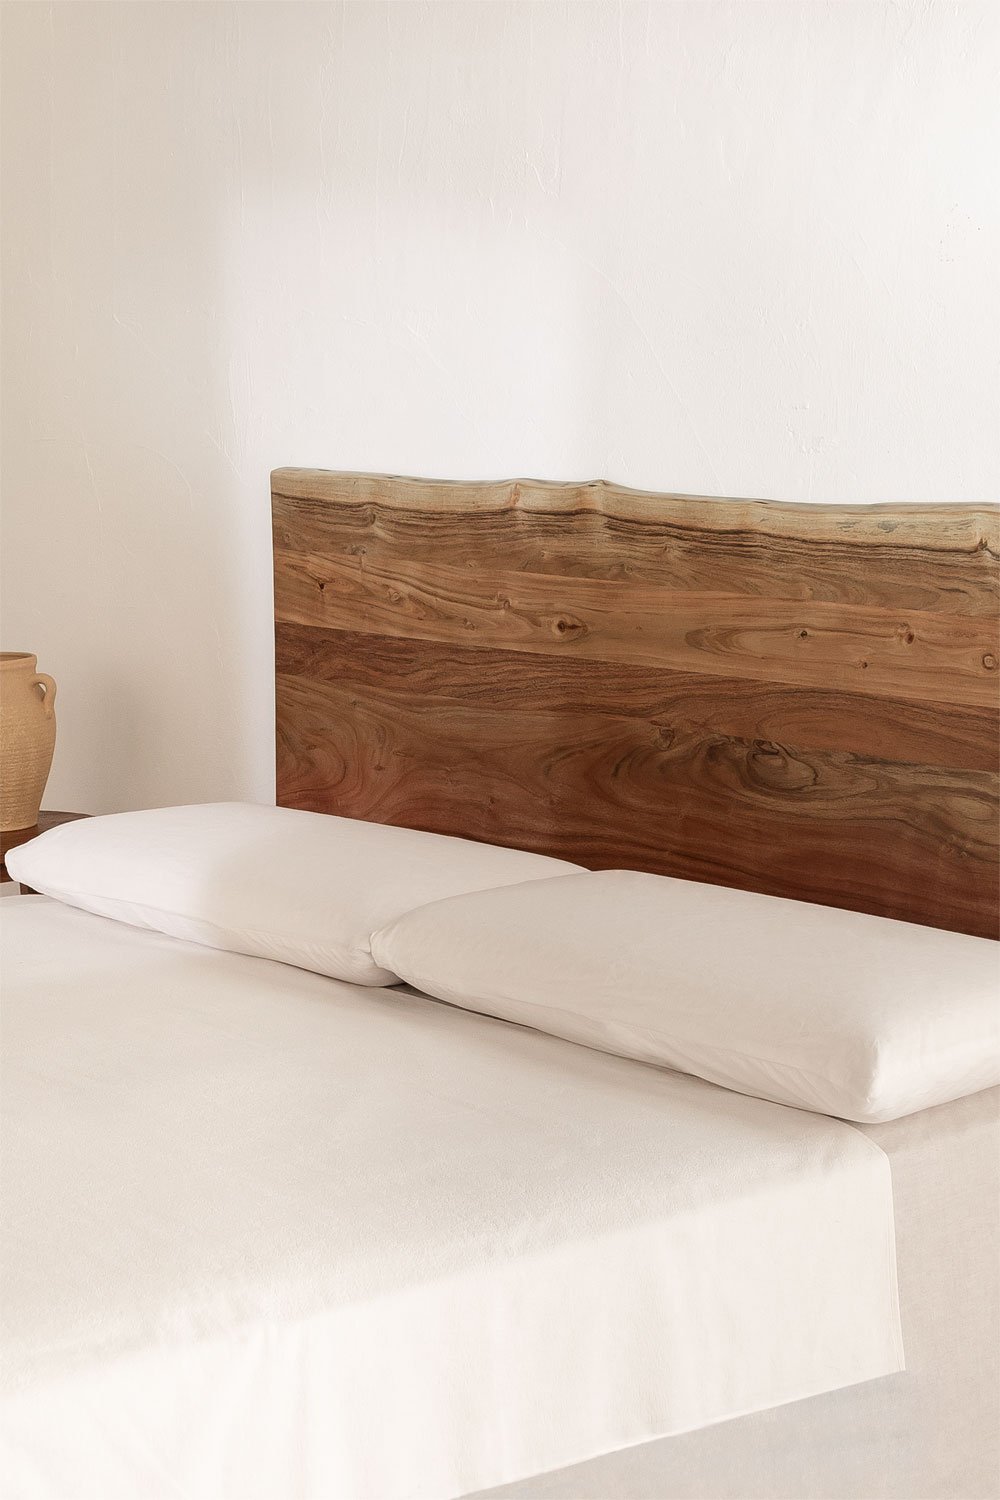 Yago hoofdeinde van acaciahout voor bed van 150 cm, galerij beeld 1